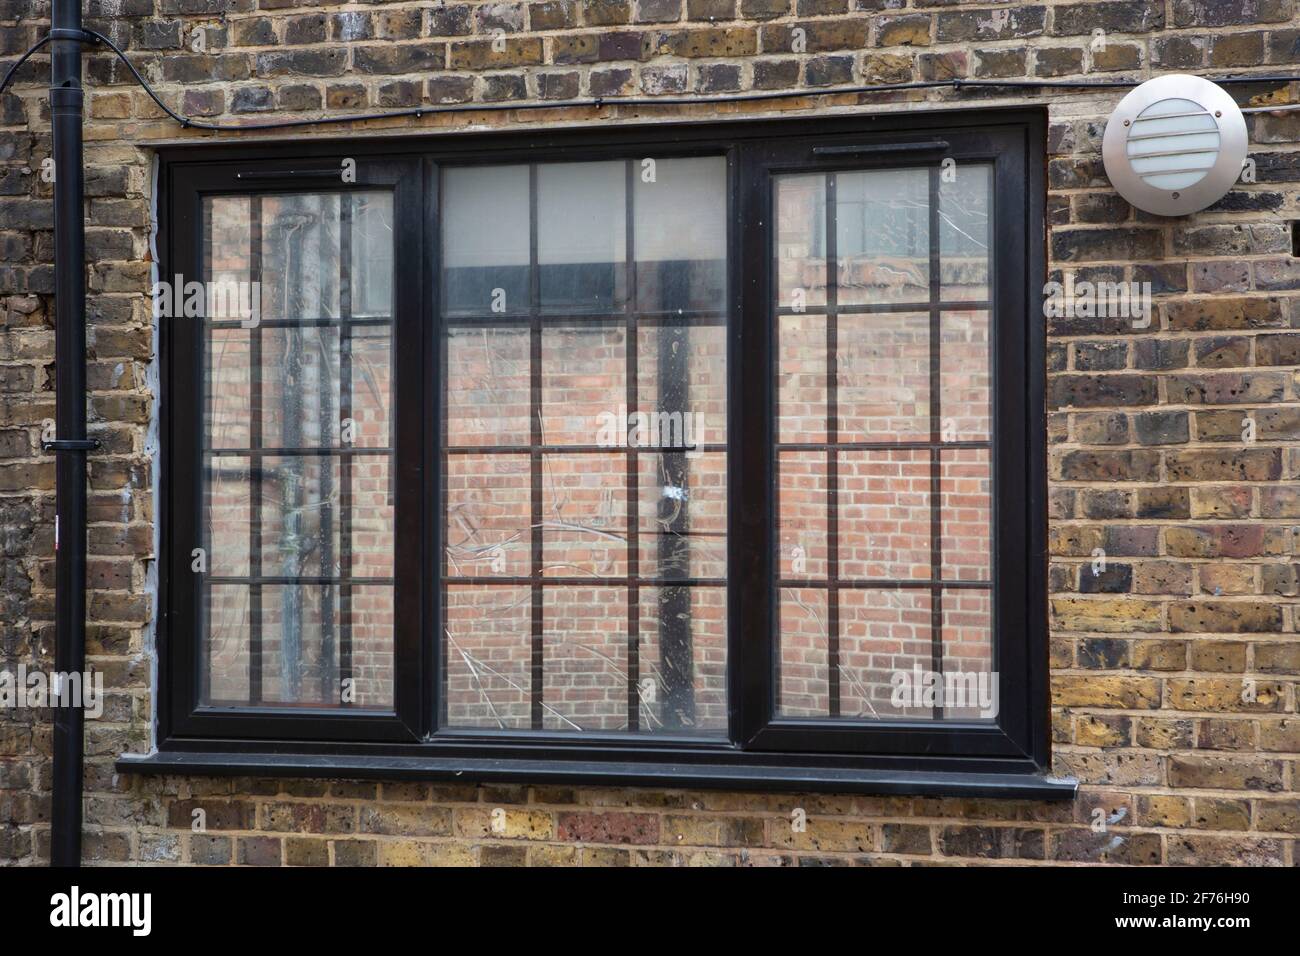 6 Fenêtres En Verre Cintré Dans Un Mur En Brique Rouge Image stock